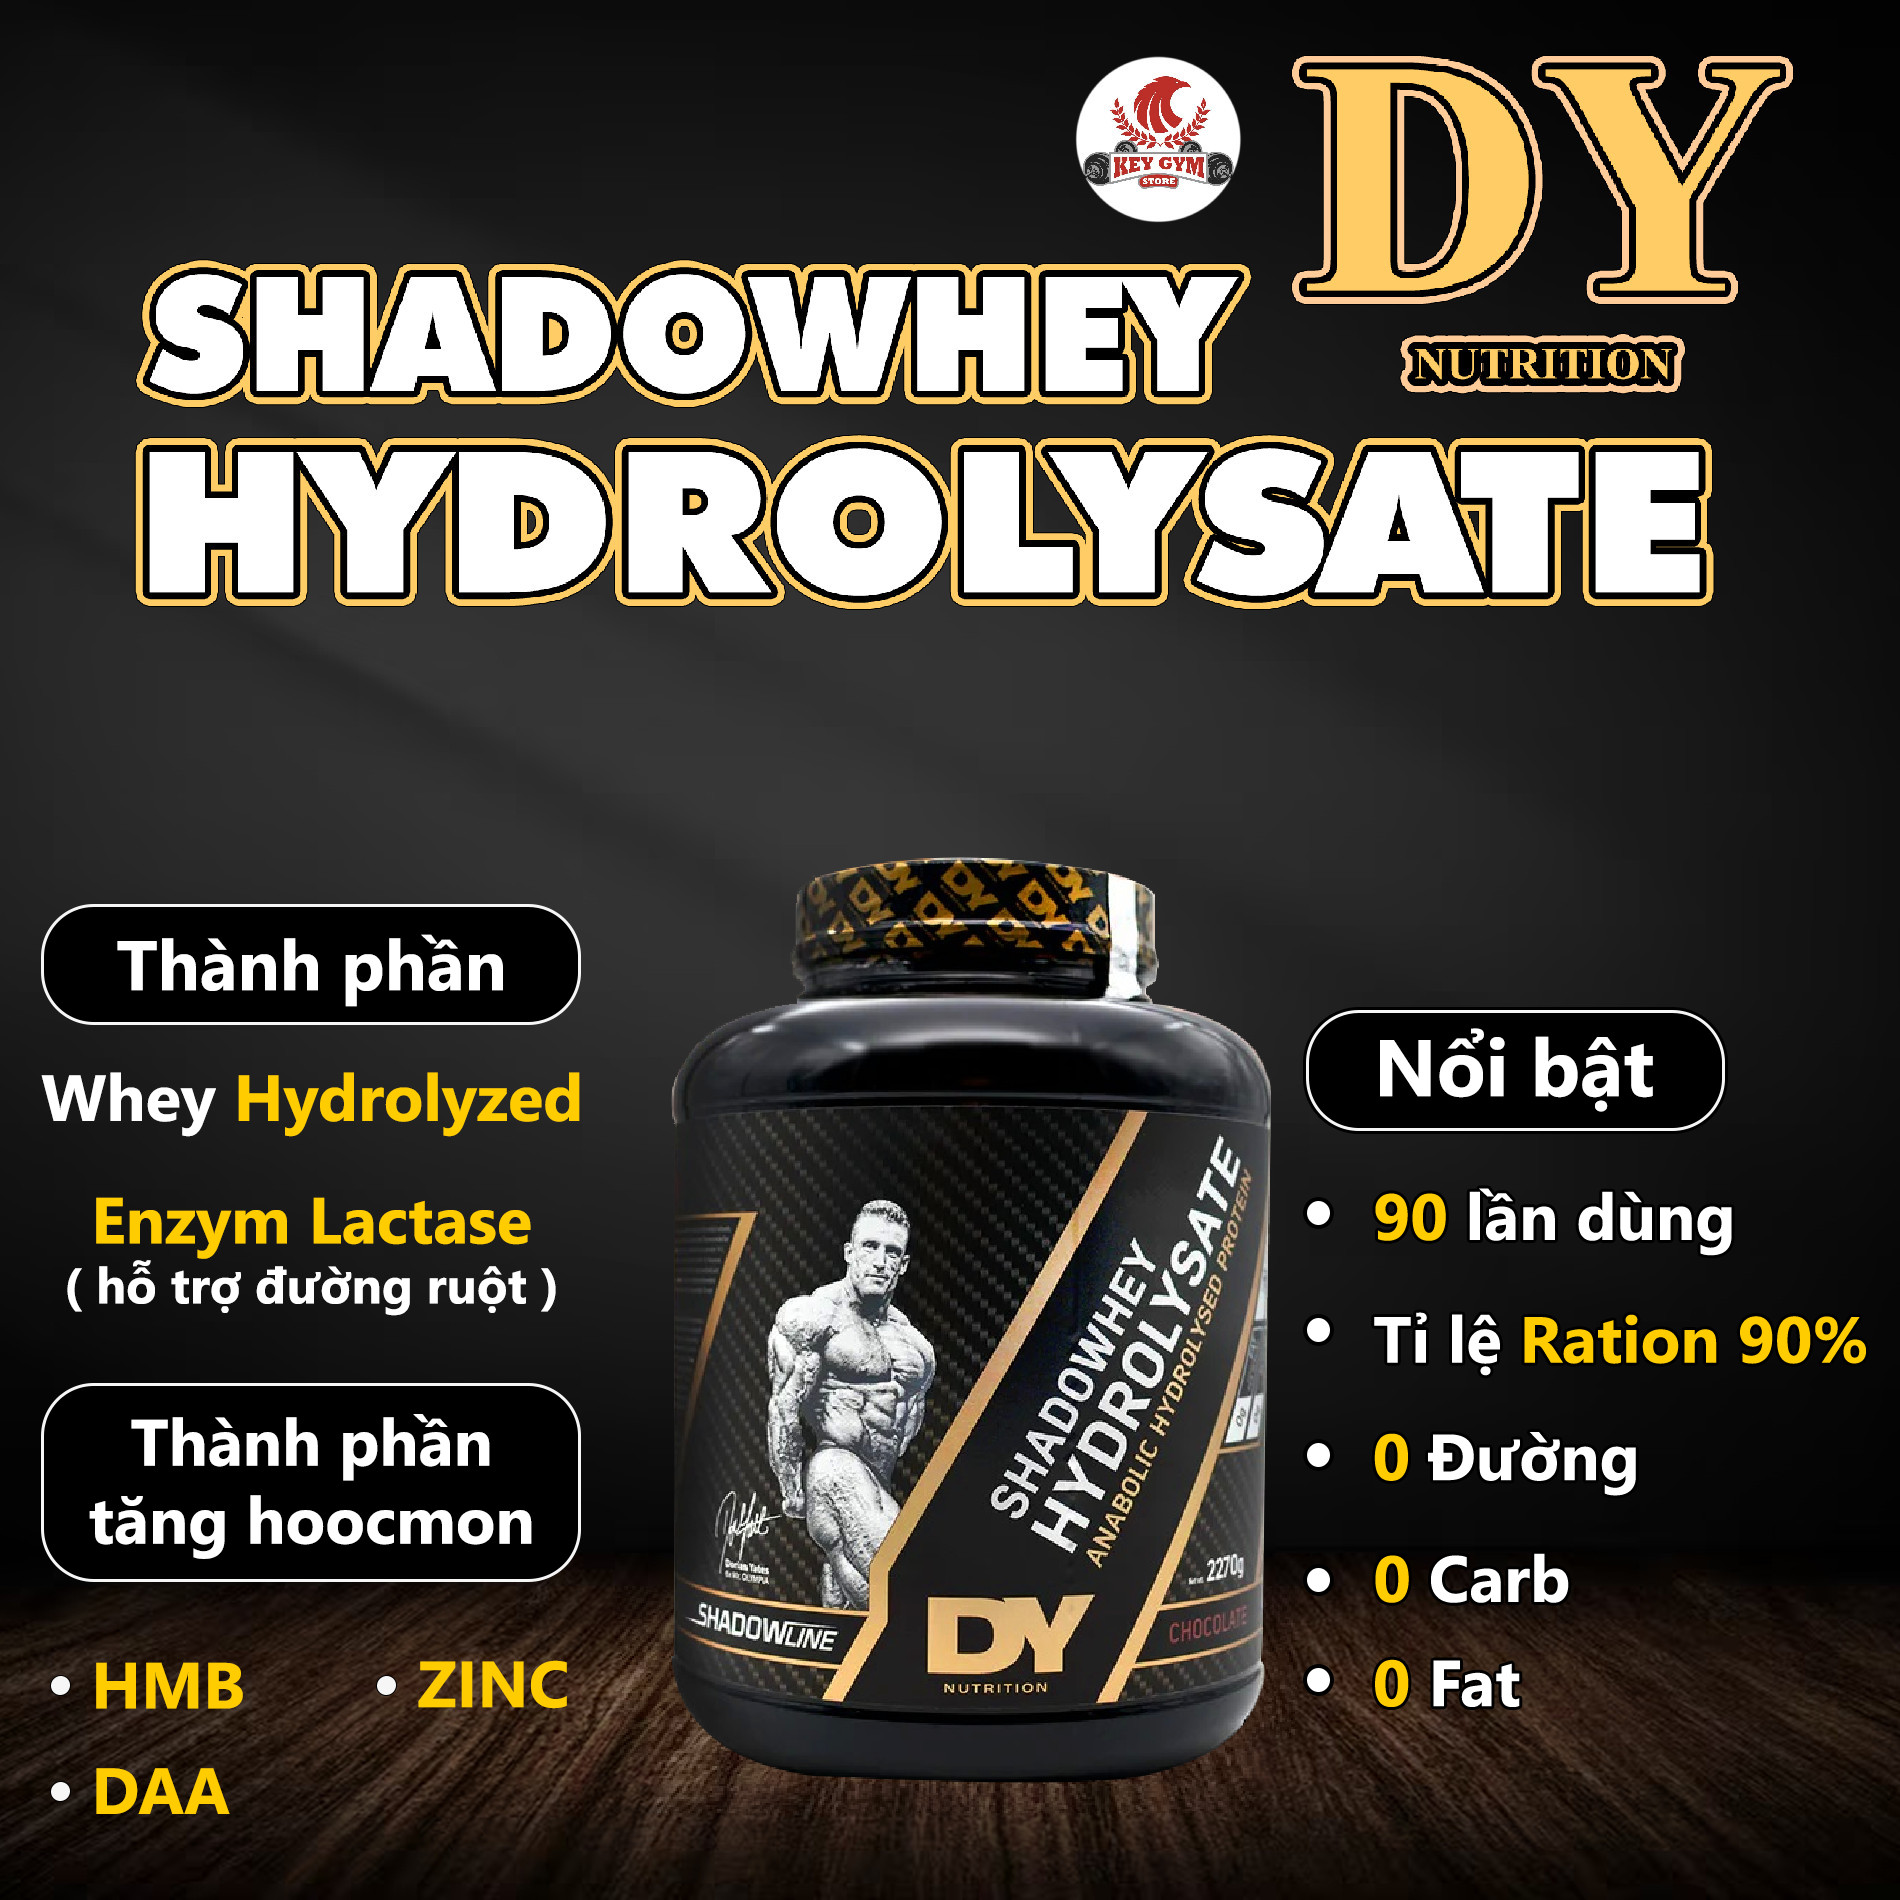 Shadowhey Hydrolysate